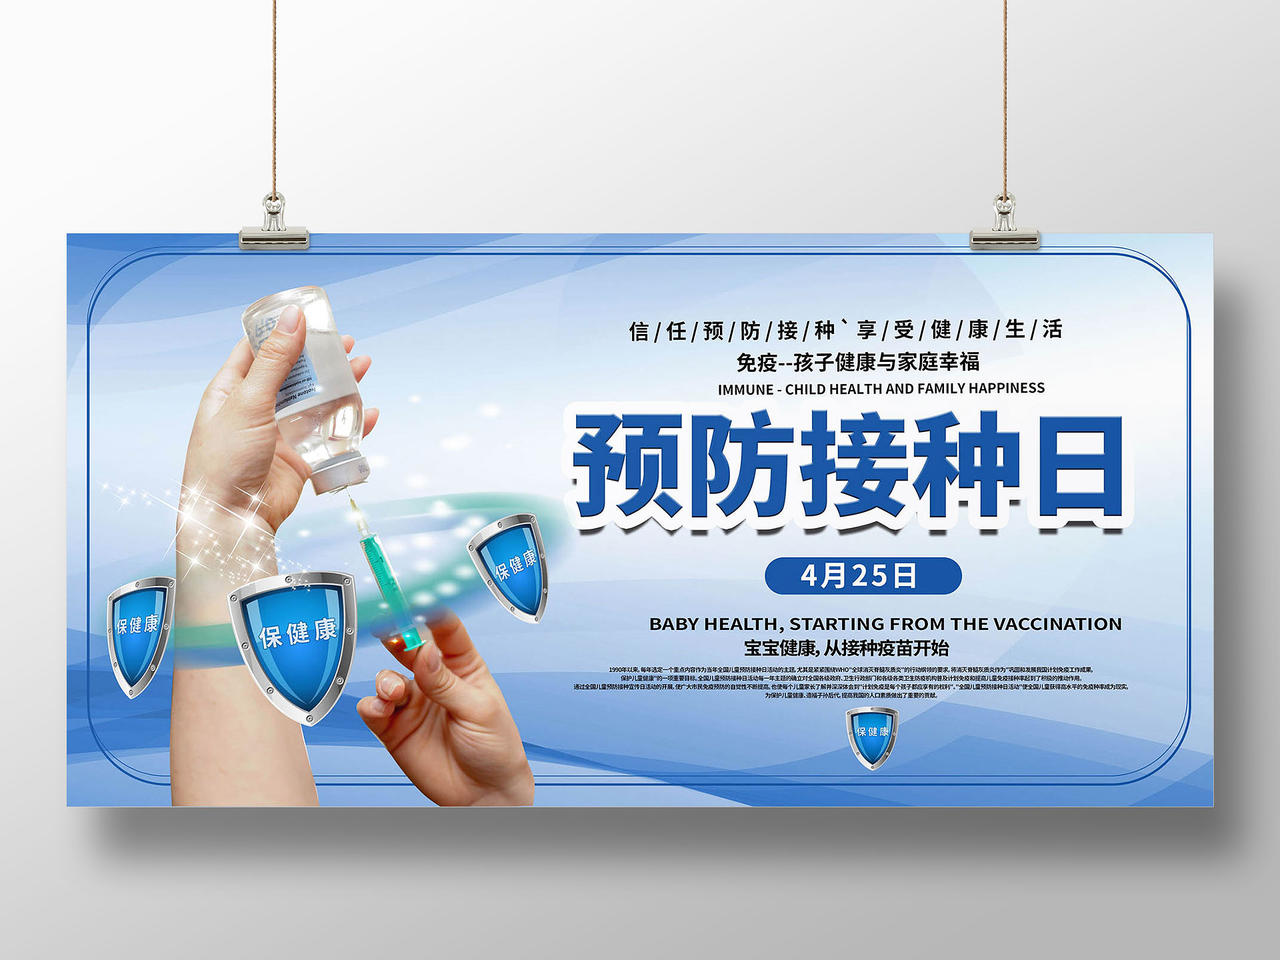 蓝色背景创意大气全国儿童预防接种日4月25日展板设计全国儿童预防接种宣传日